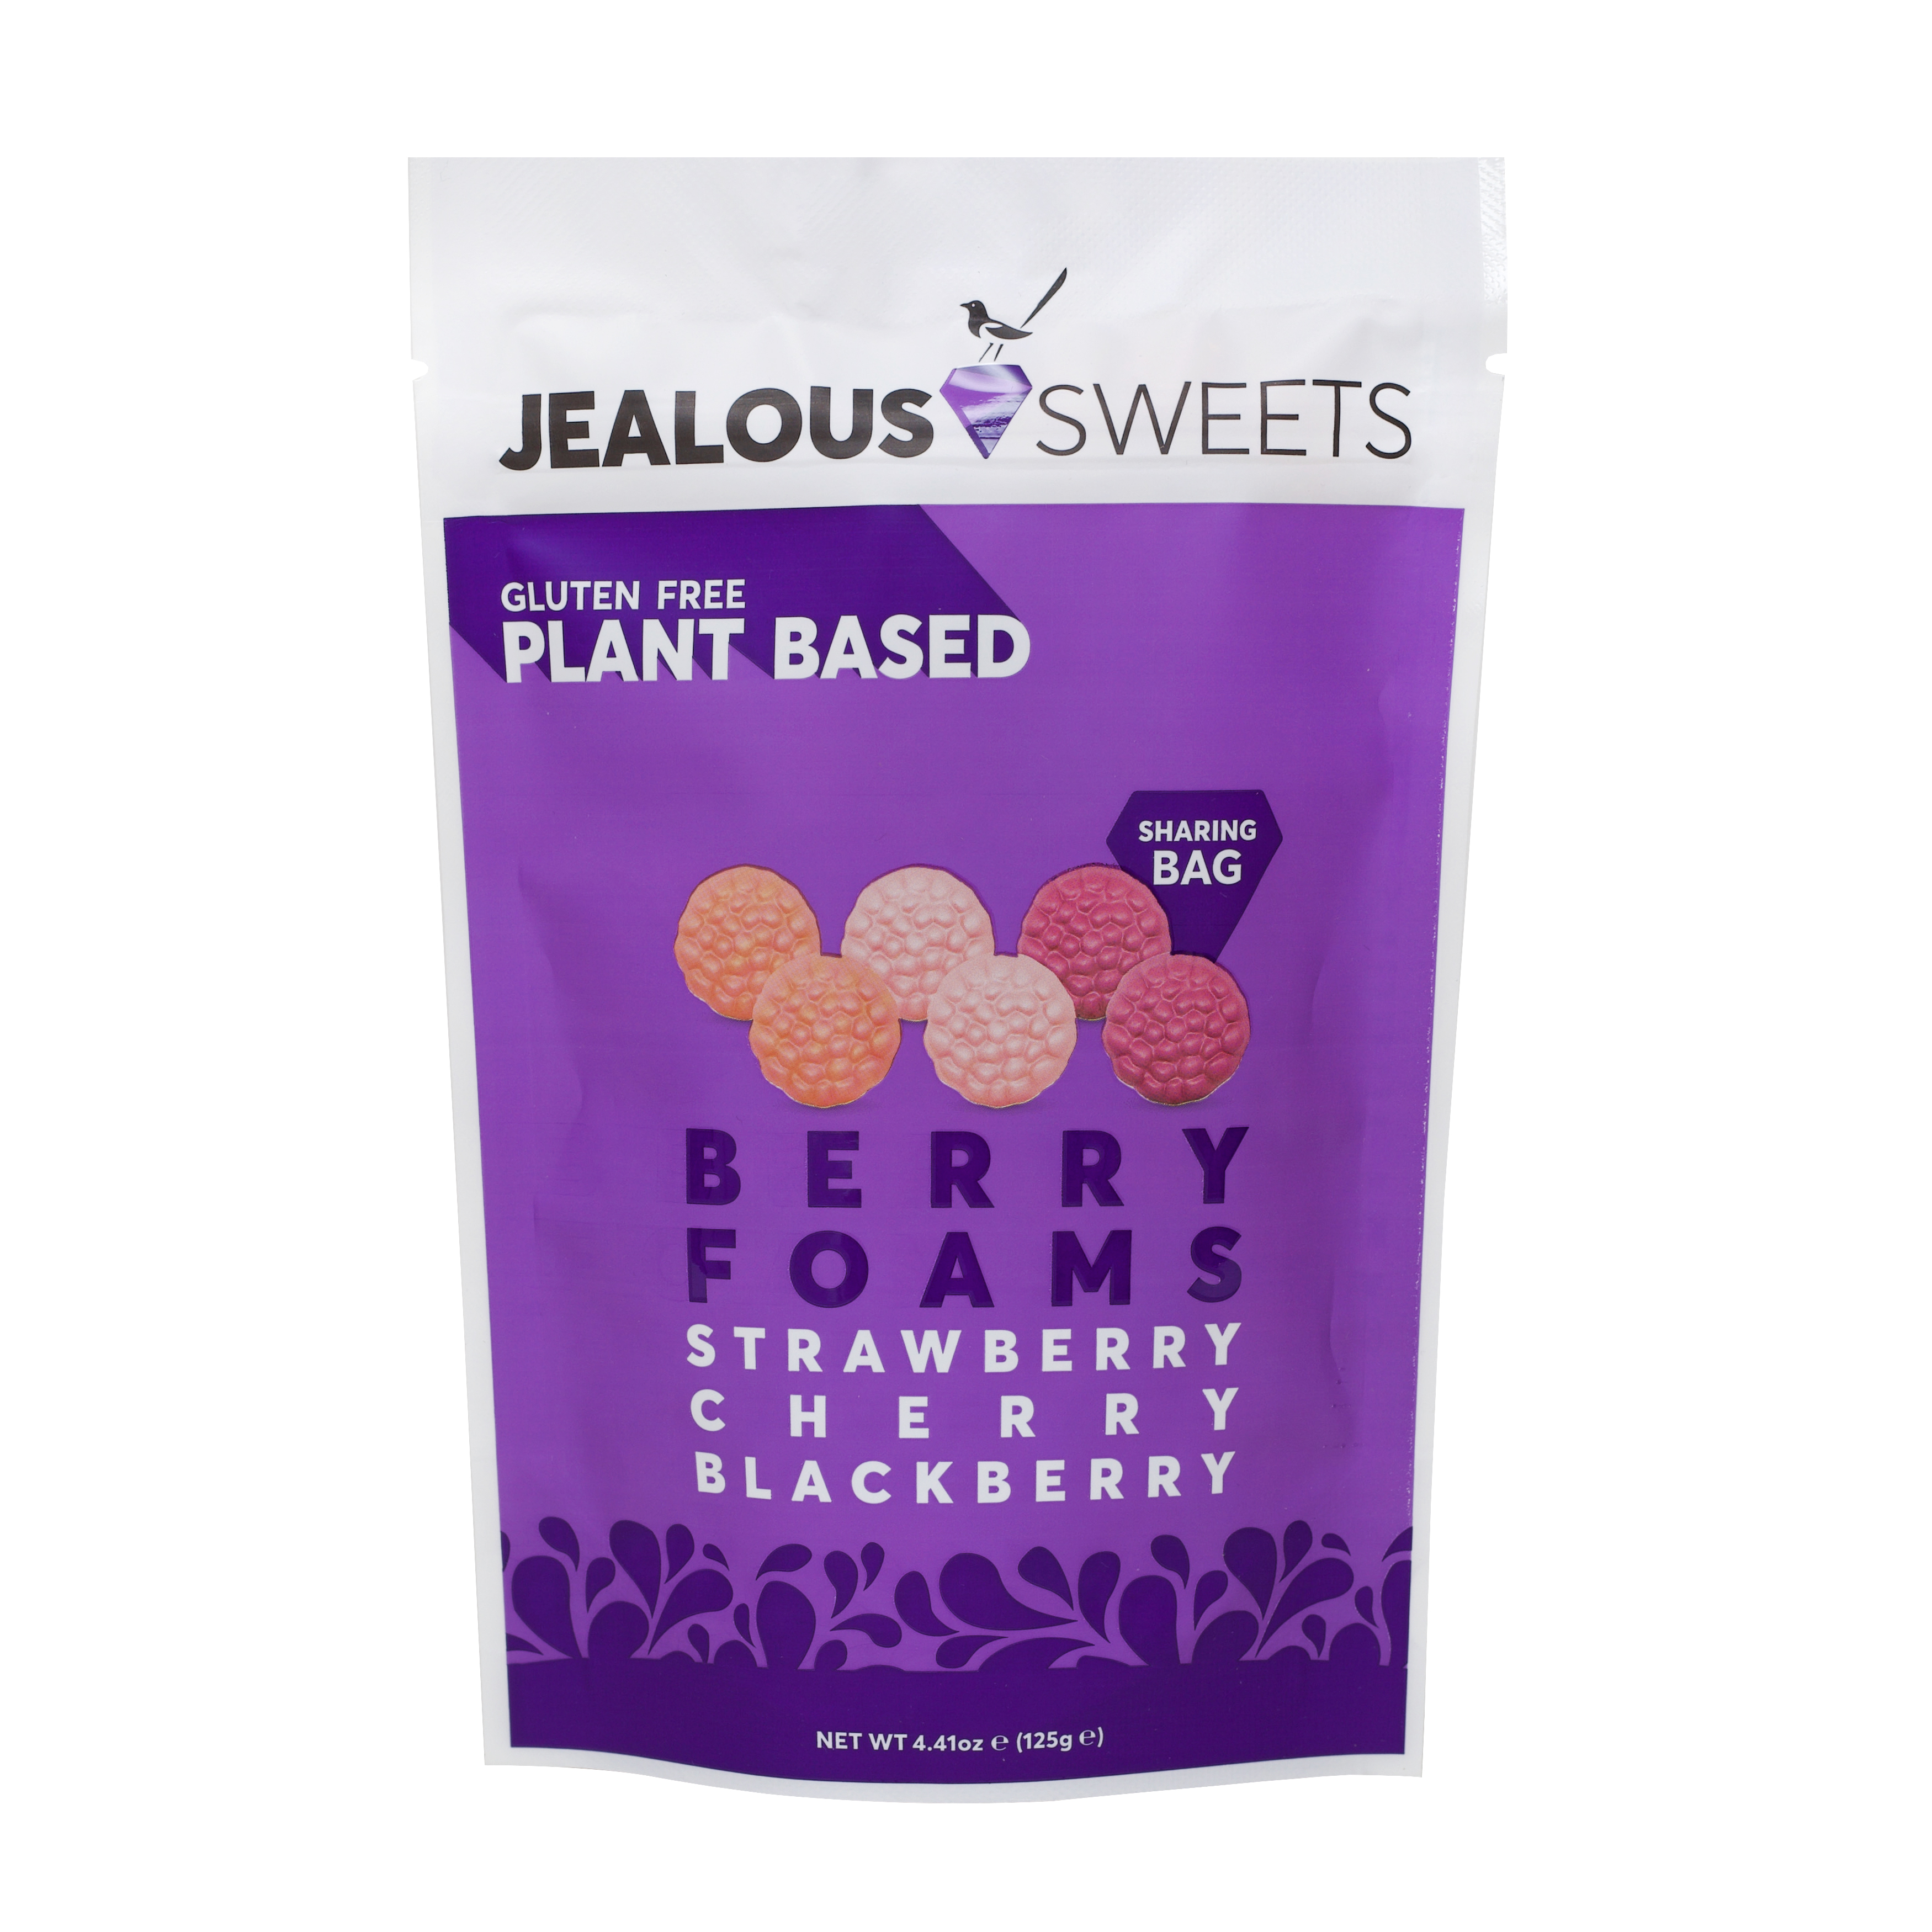 Jealous Sweets Berry Foams 7 units per case 4.5 oz